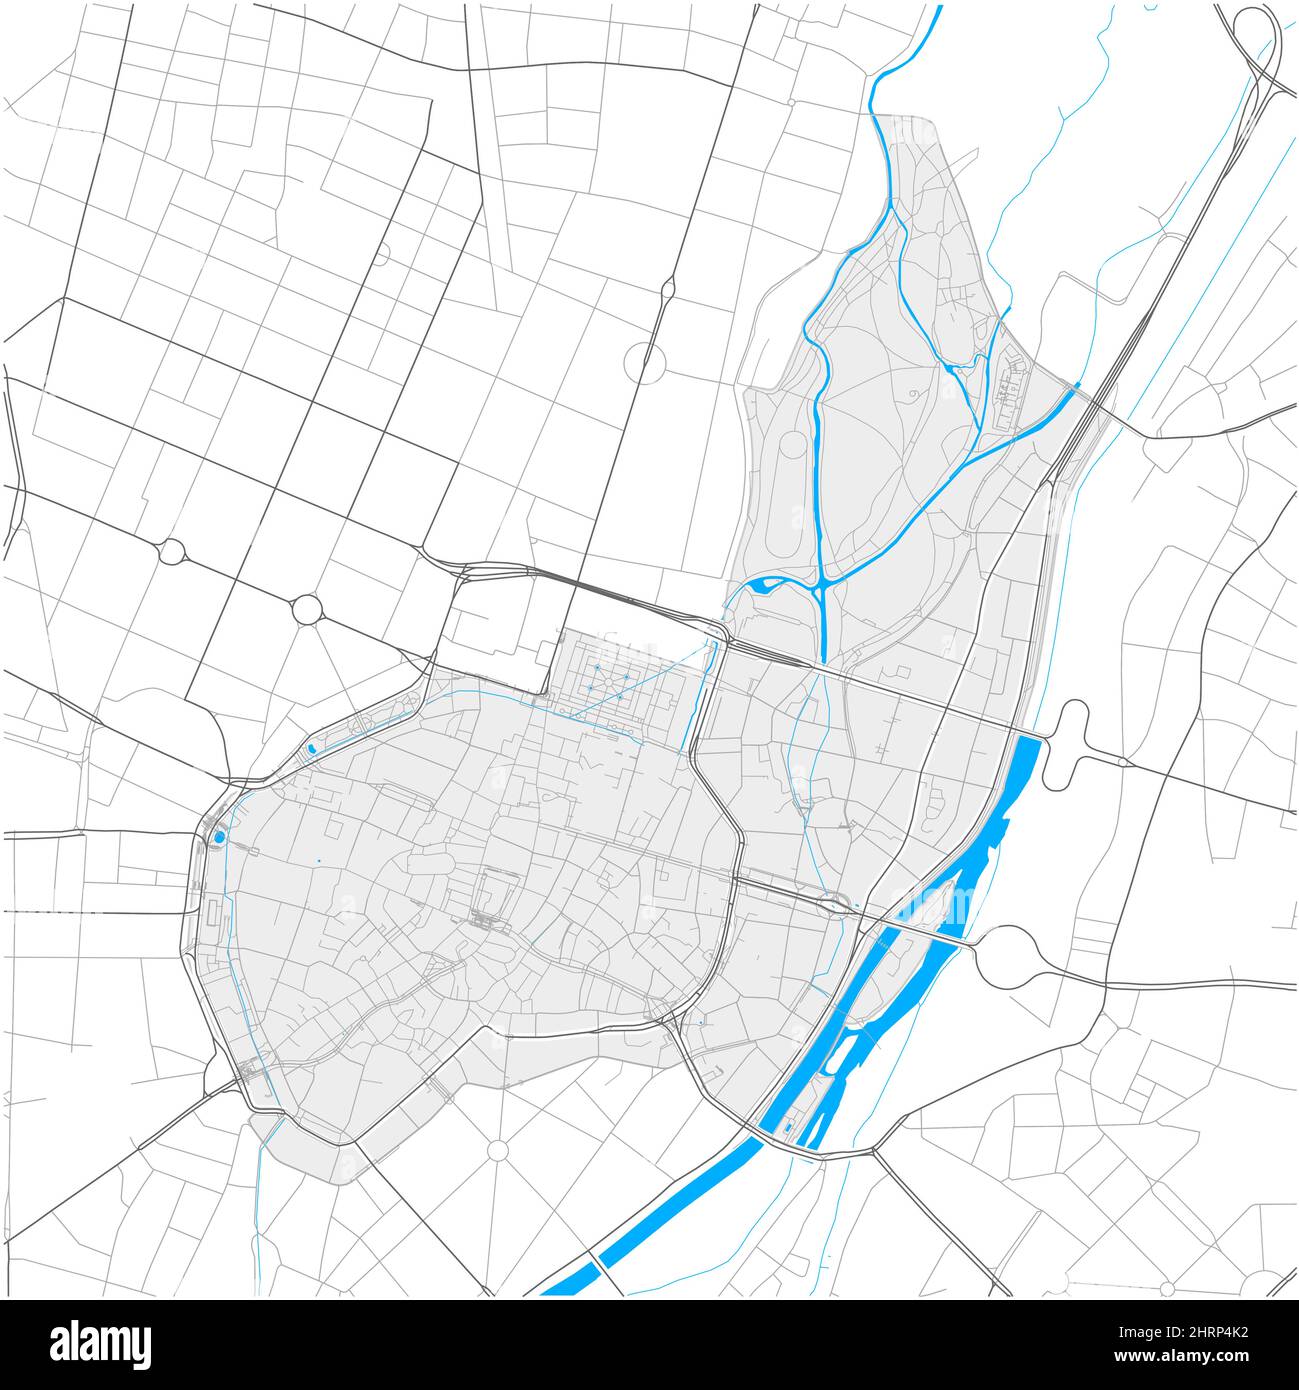 Altstadt-Lehel, München, DEUTSCHLAND, carte vectorielle haute précision avec frontières de la ville et chemins modifiables. Contours blancs pour les routes principales. Beaucoup plus petit chemin Illustration de Vecteur